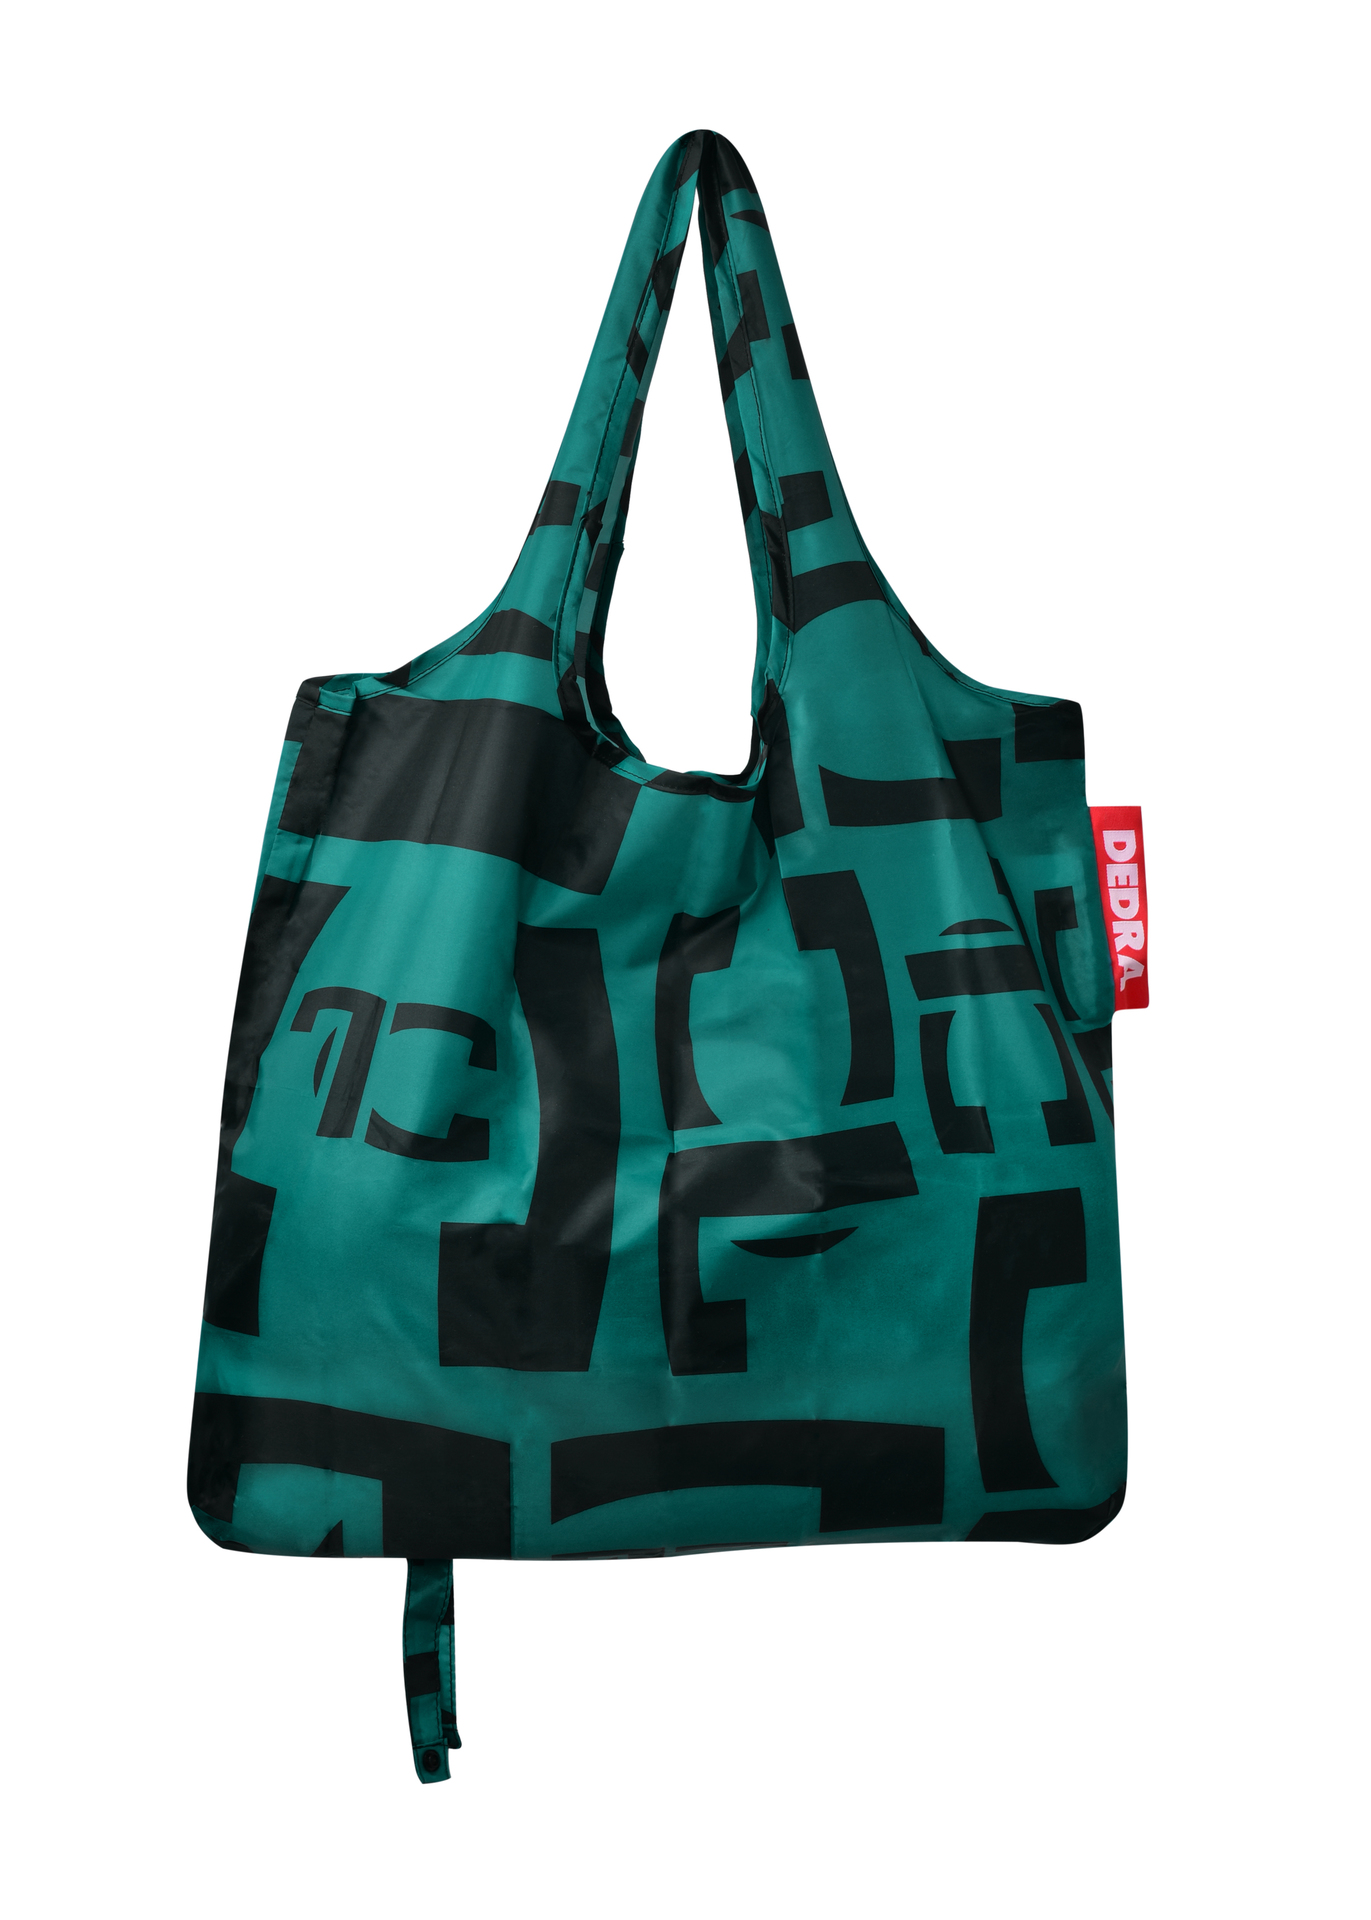 Nákupná skladacia textilná taška CITYBAG - FC